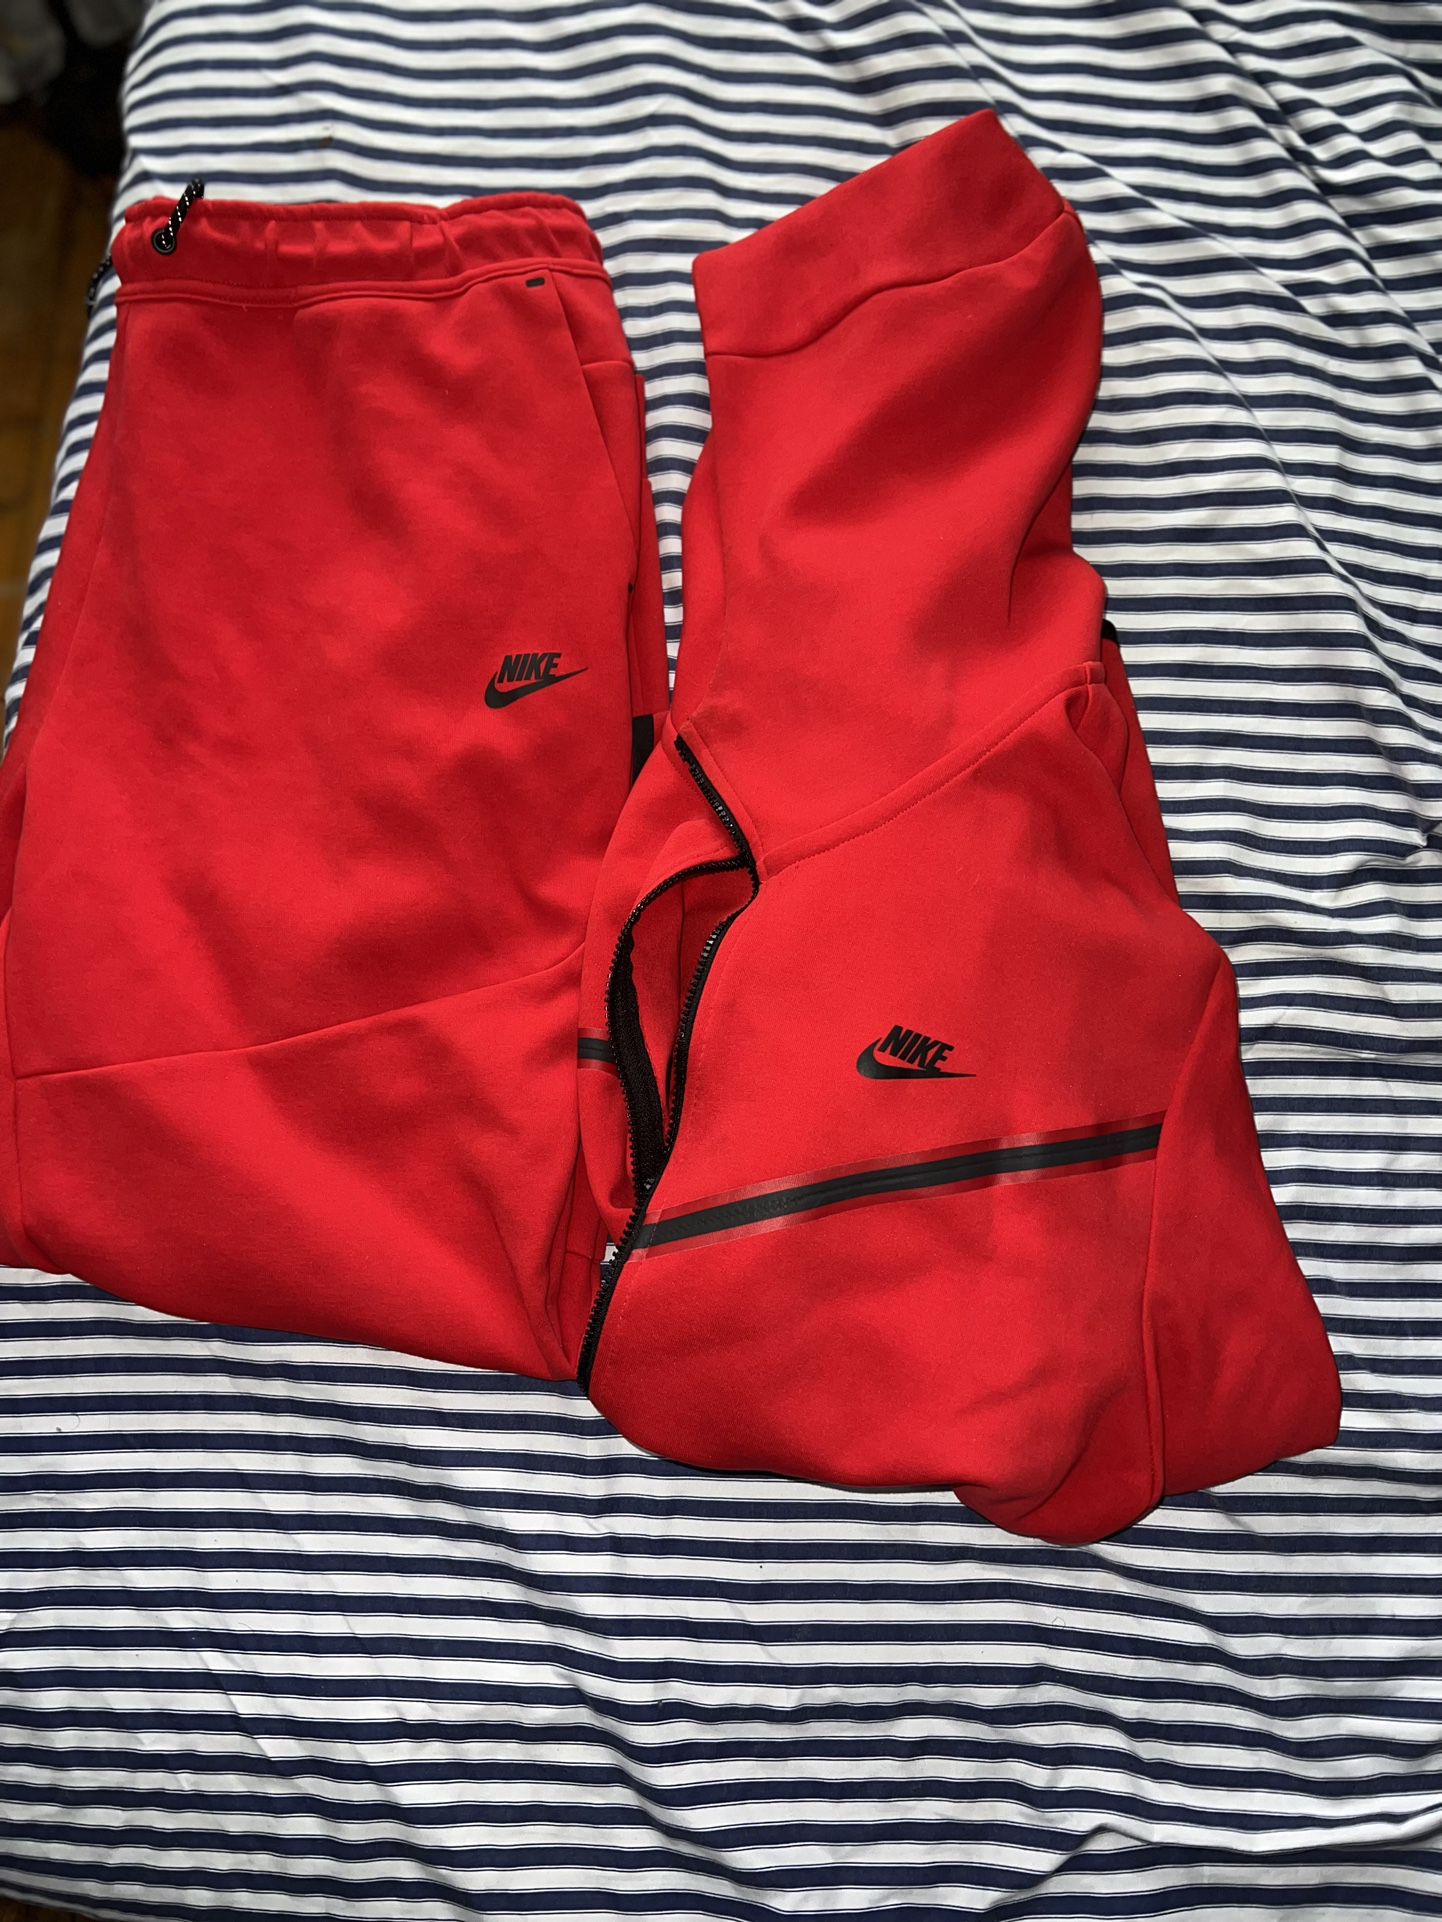 Full Red Nike Tech Hoodie/Zip Sweat Suit